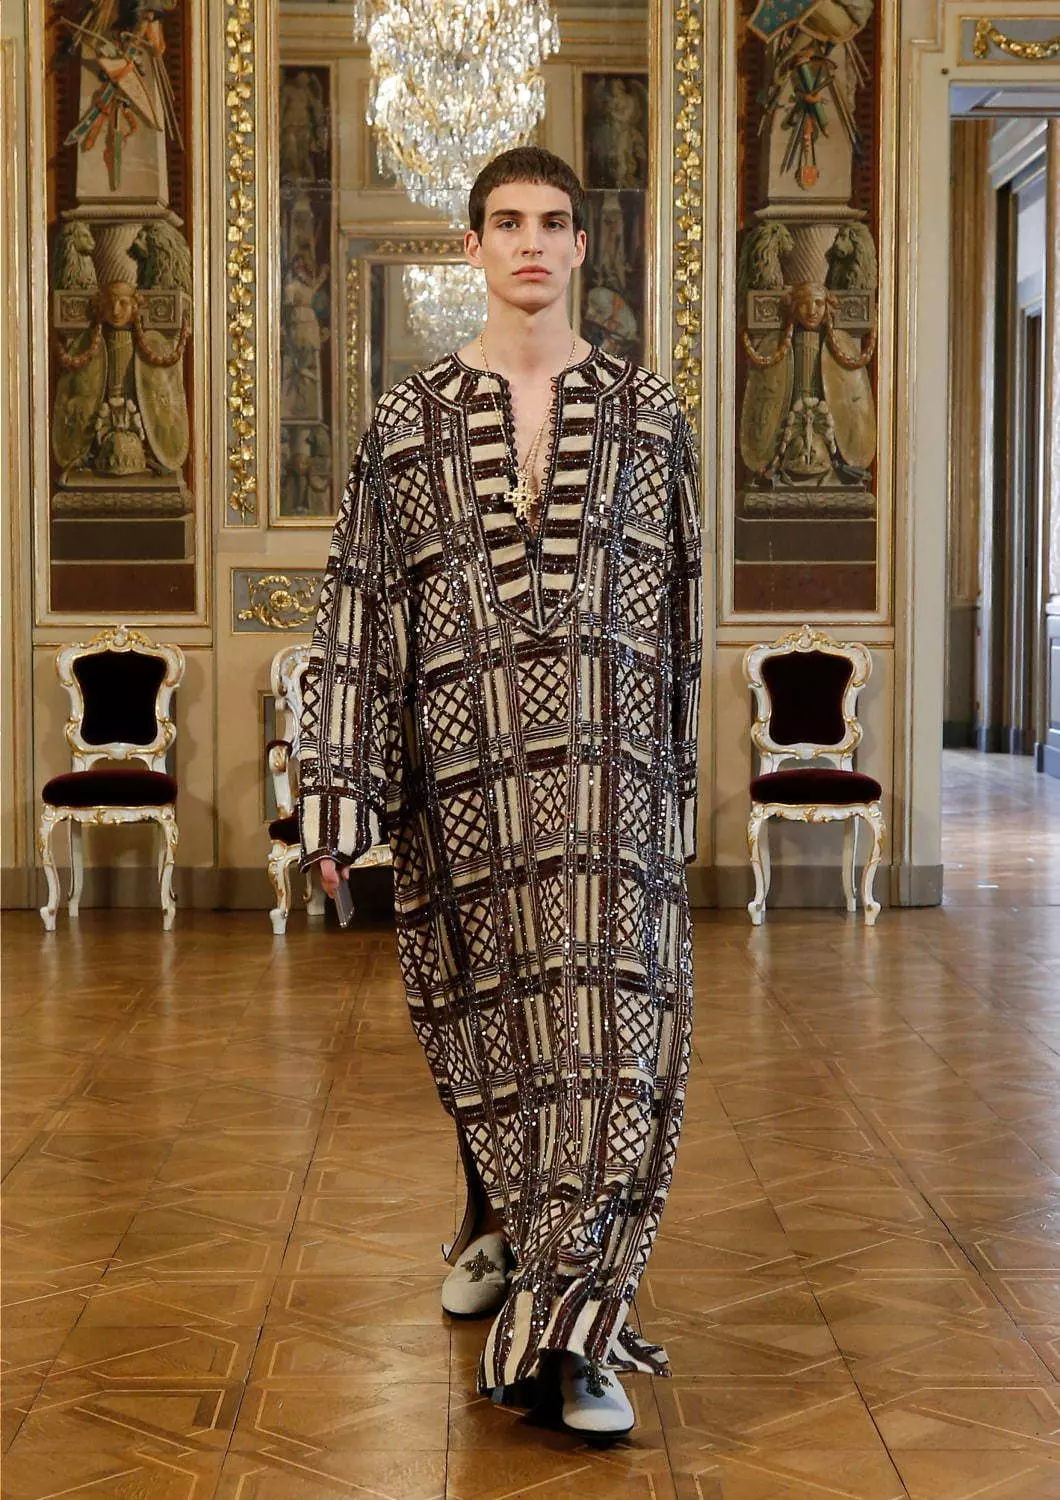 Colección Dolce & Gabbana Alta Sartoria Menswear Julio 2020 53602_41